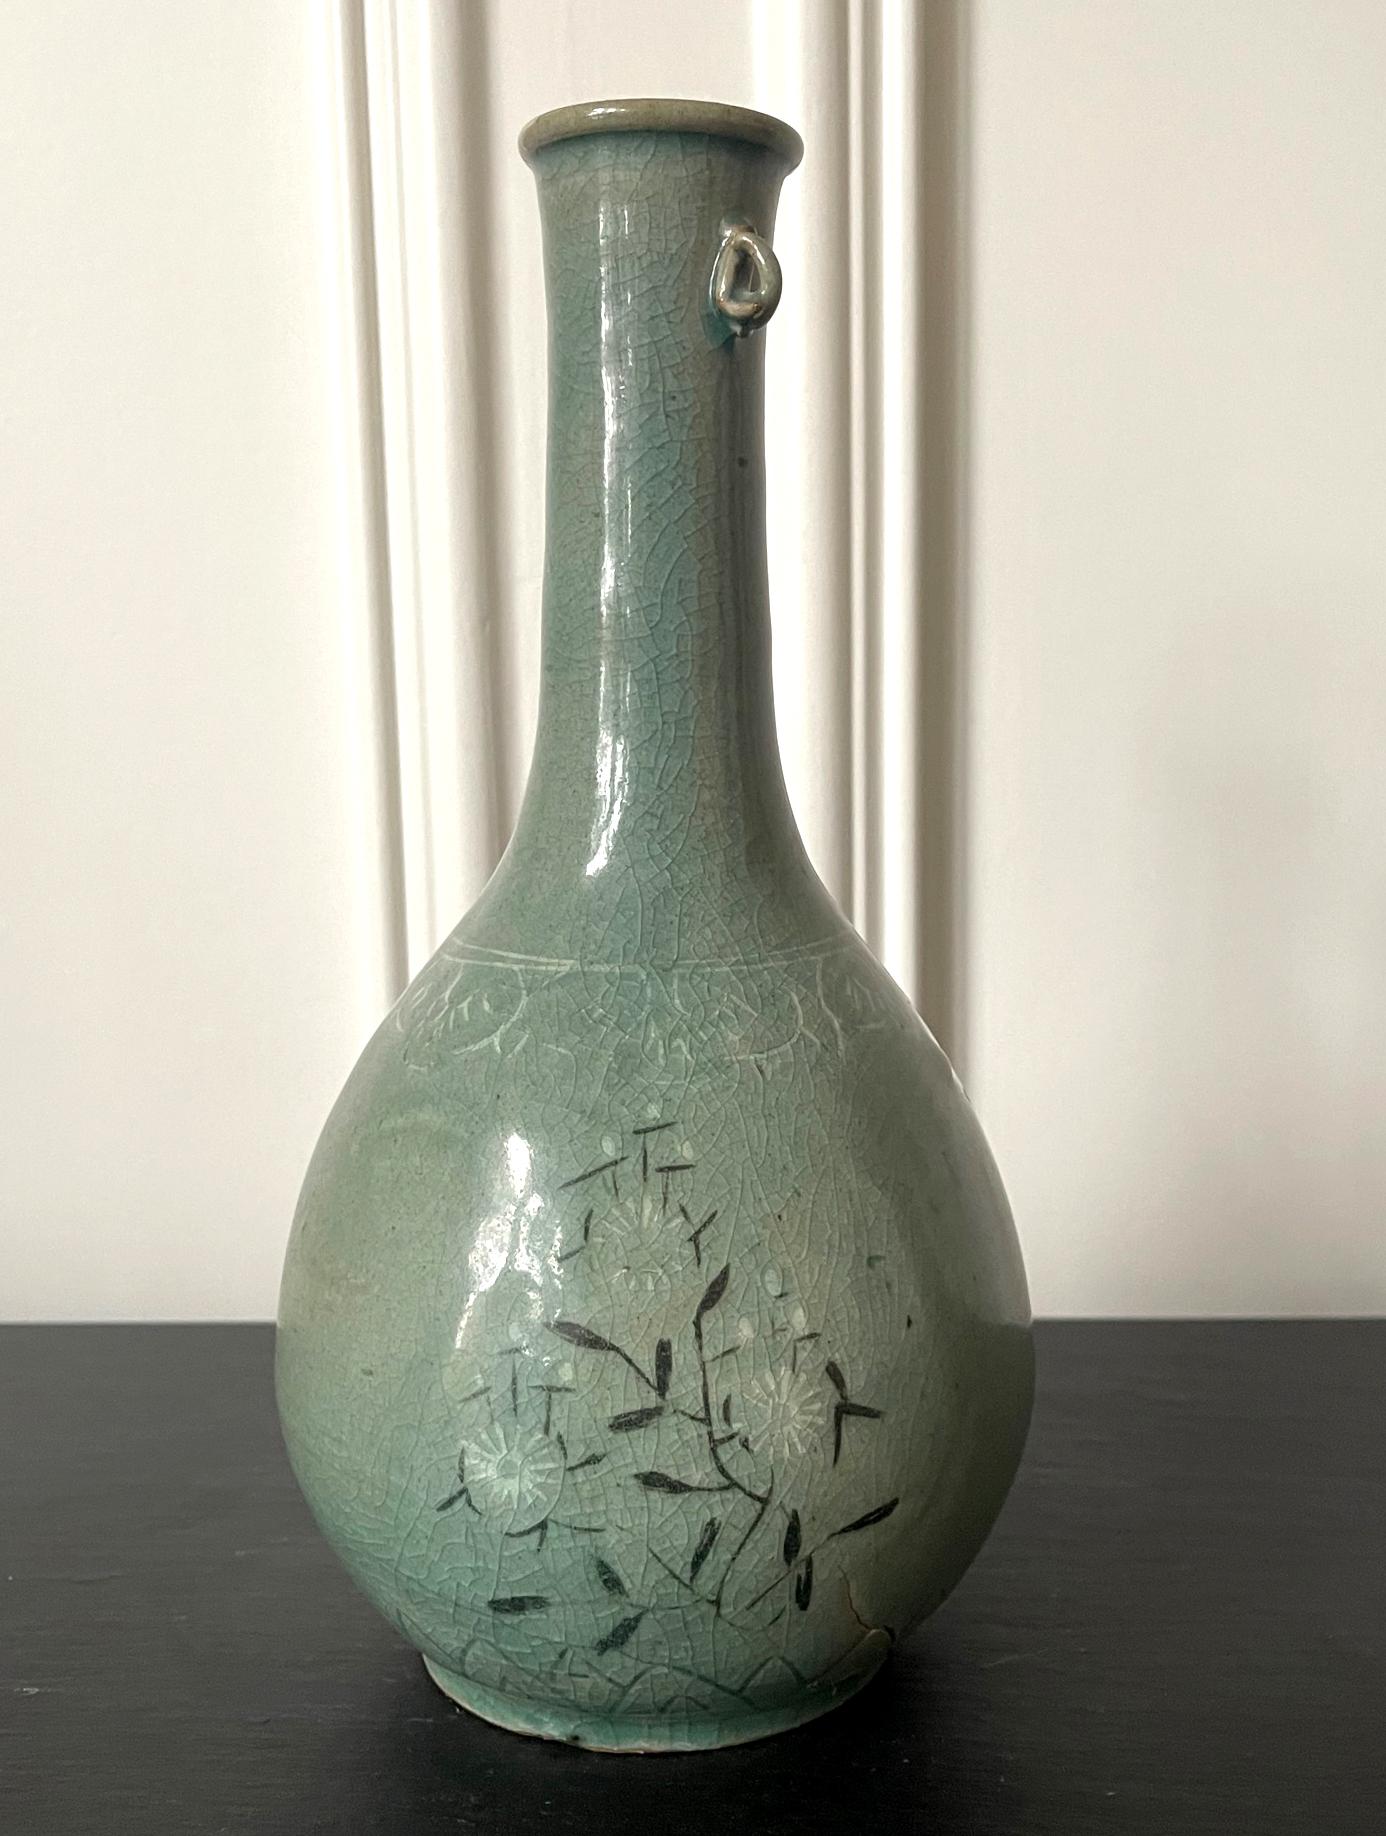 Vase bouteille en céramique coréenne céladon avec incrustation de la dynastie Goryeo (918 à 1392) vers le 12e siècle. Avec un col allongé qui se prolonge jusqu'au corps en forme de poire dans une courbe douce et élégante, et une patte appliquée sur